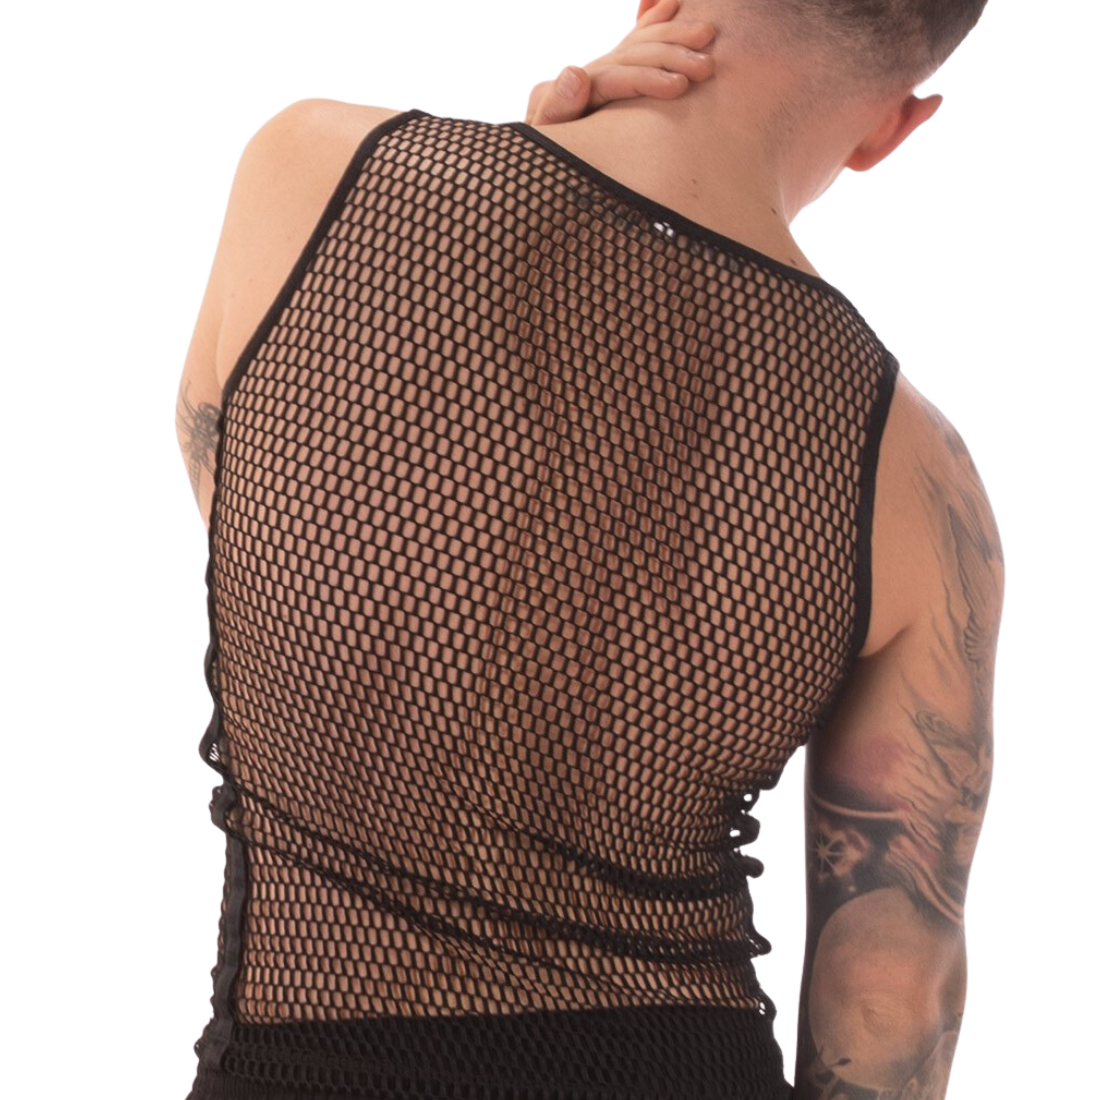 Zwarte mesh tank top, ontworpen door het Duitse modemerk Barcode Berlin. Perfect voor gay mannen en te koop bij Flavourez.